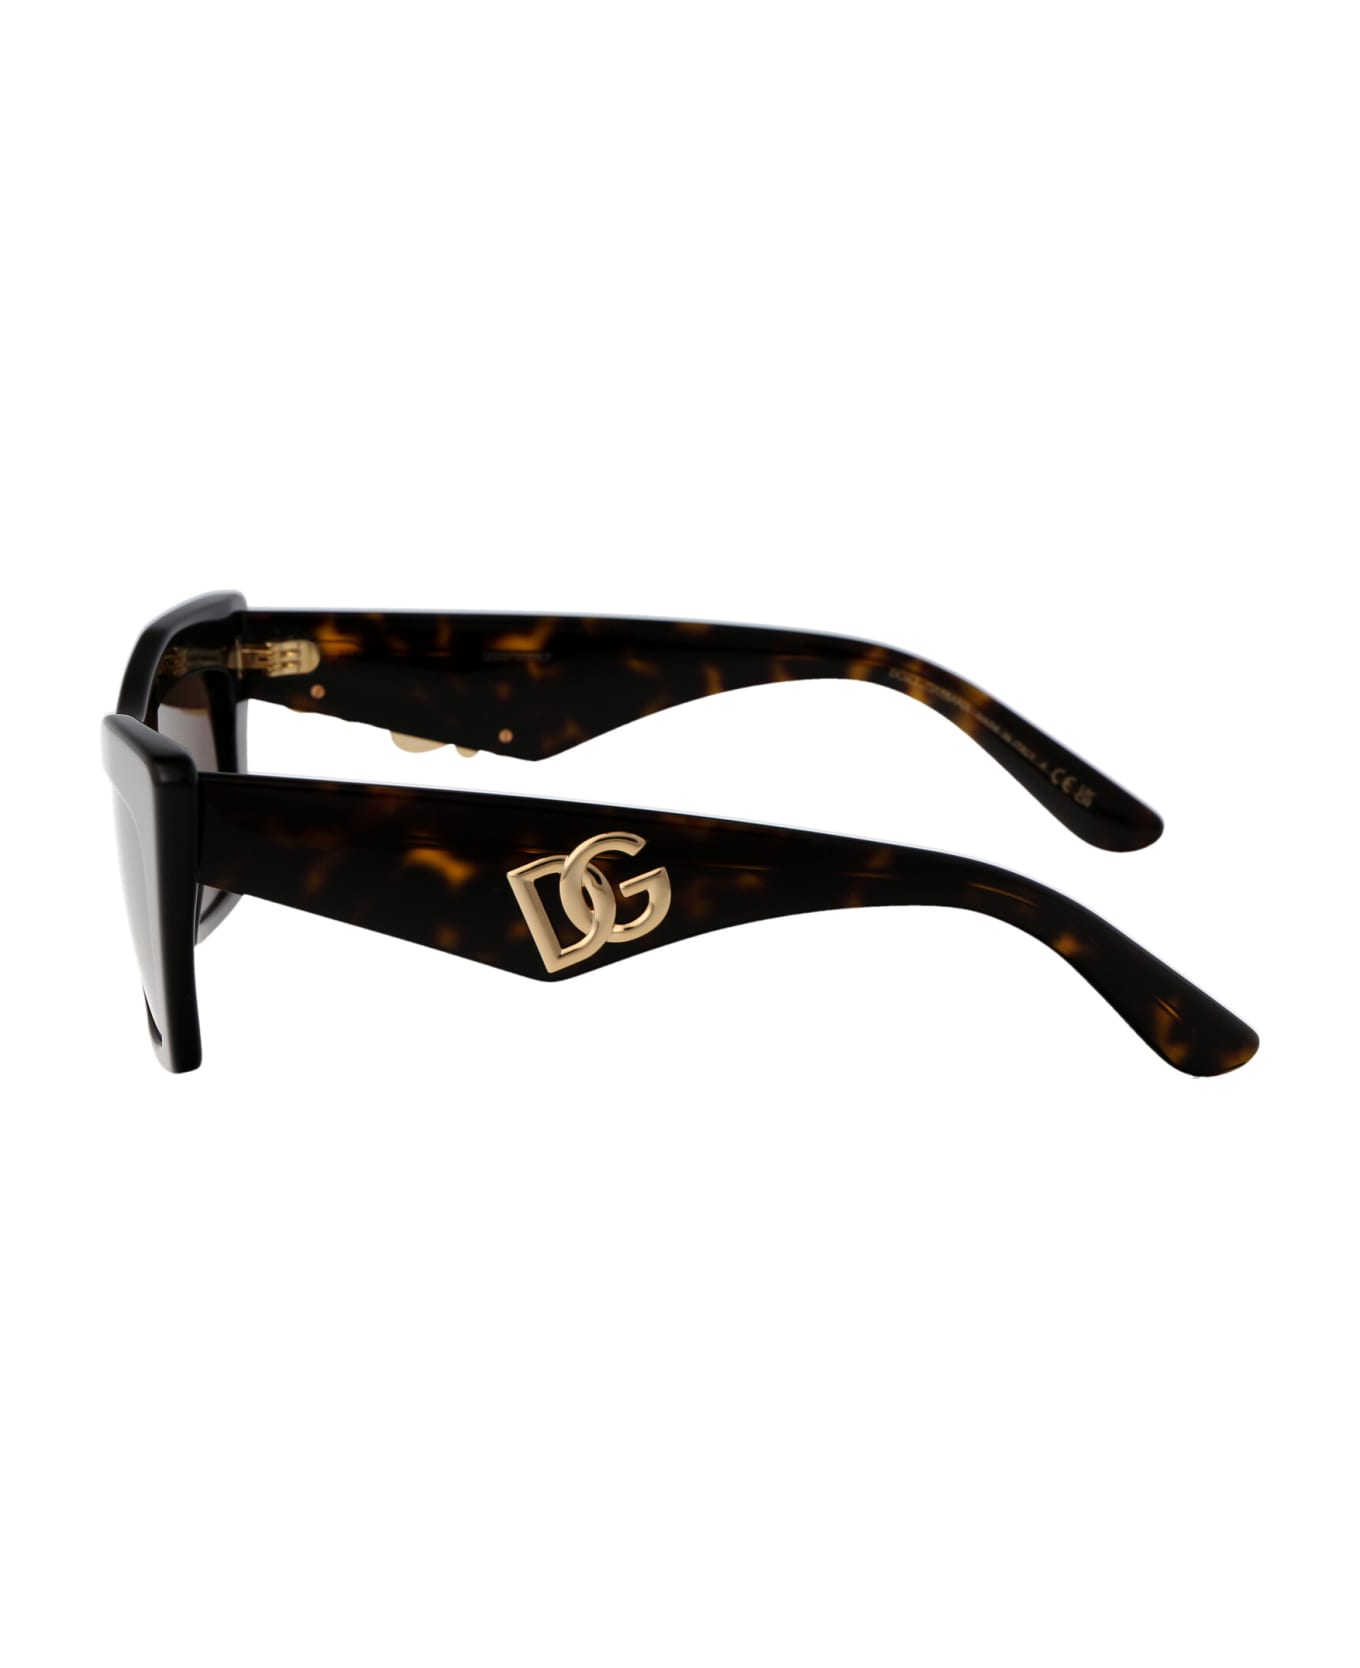 Dolce & Gabbana Eyewear 0dg4435 Sunglasses - 502/73 HAVANA